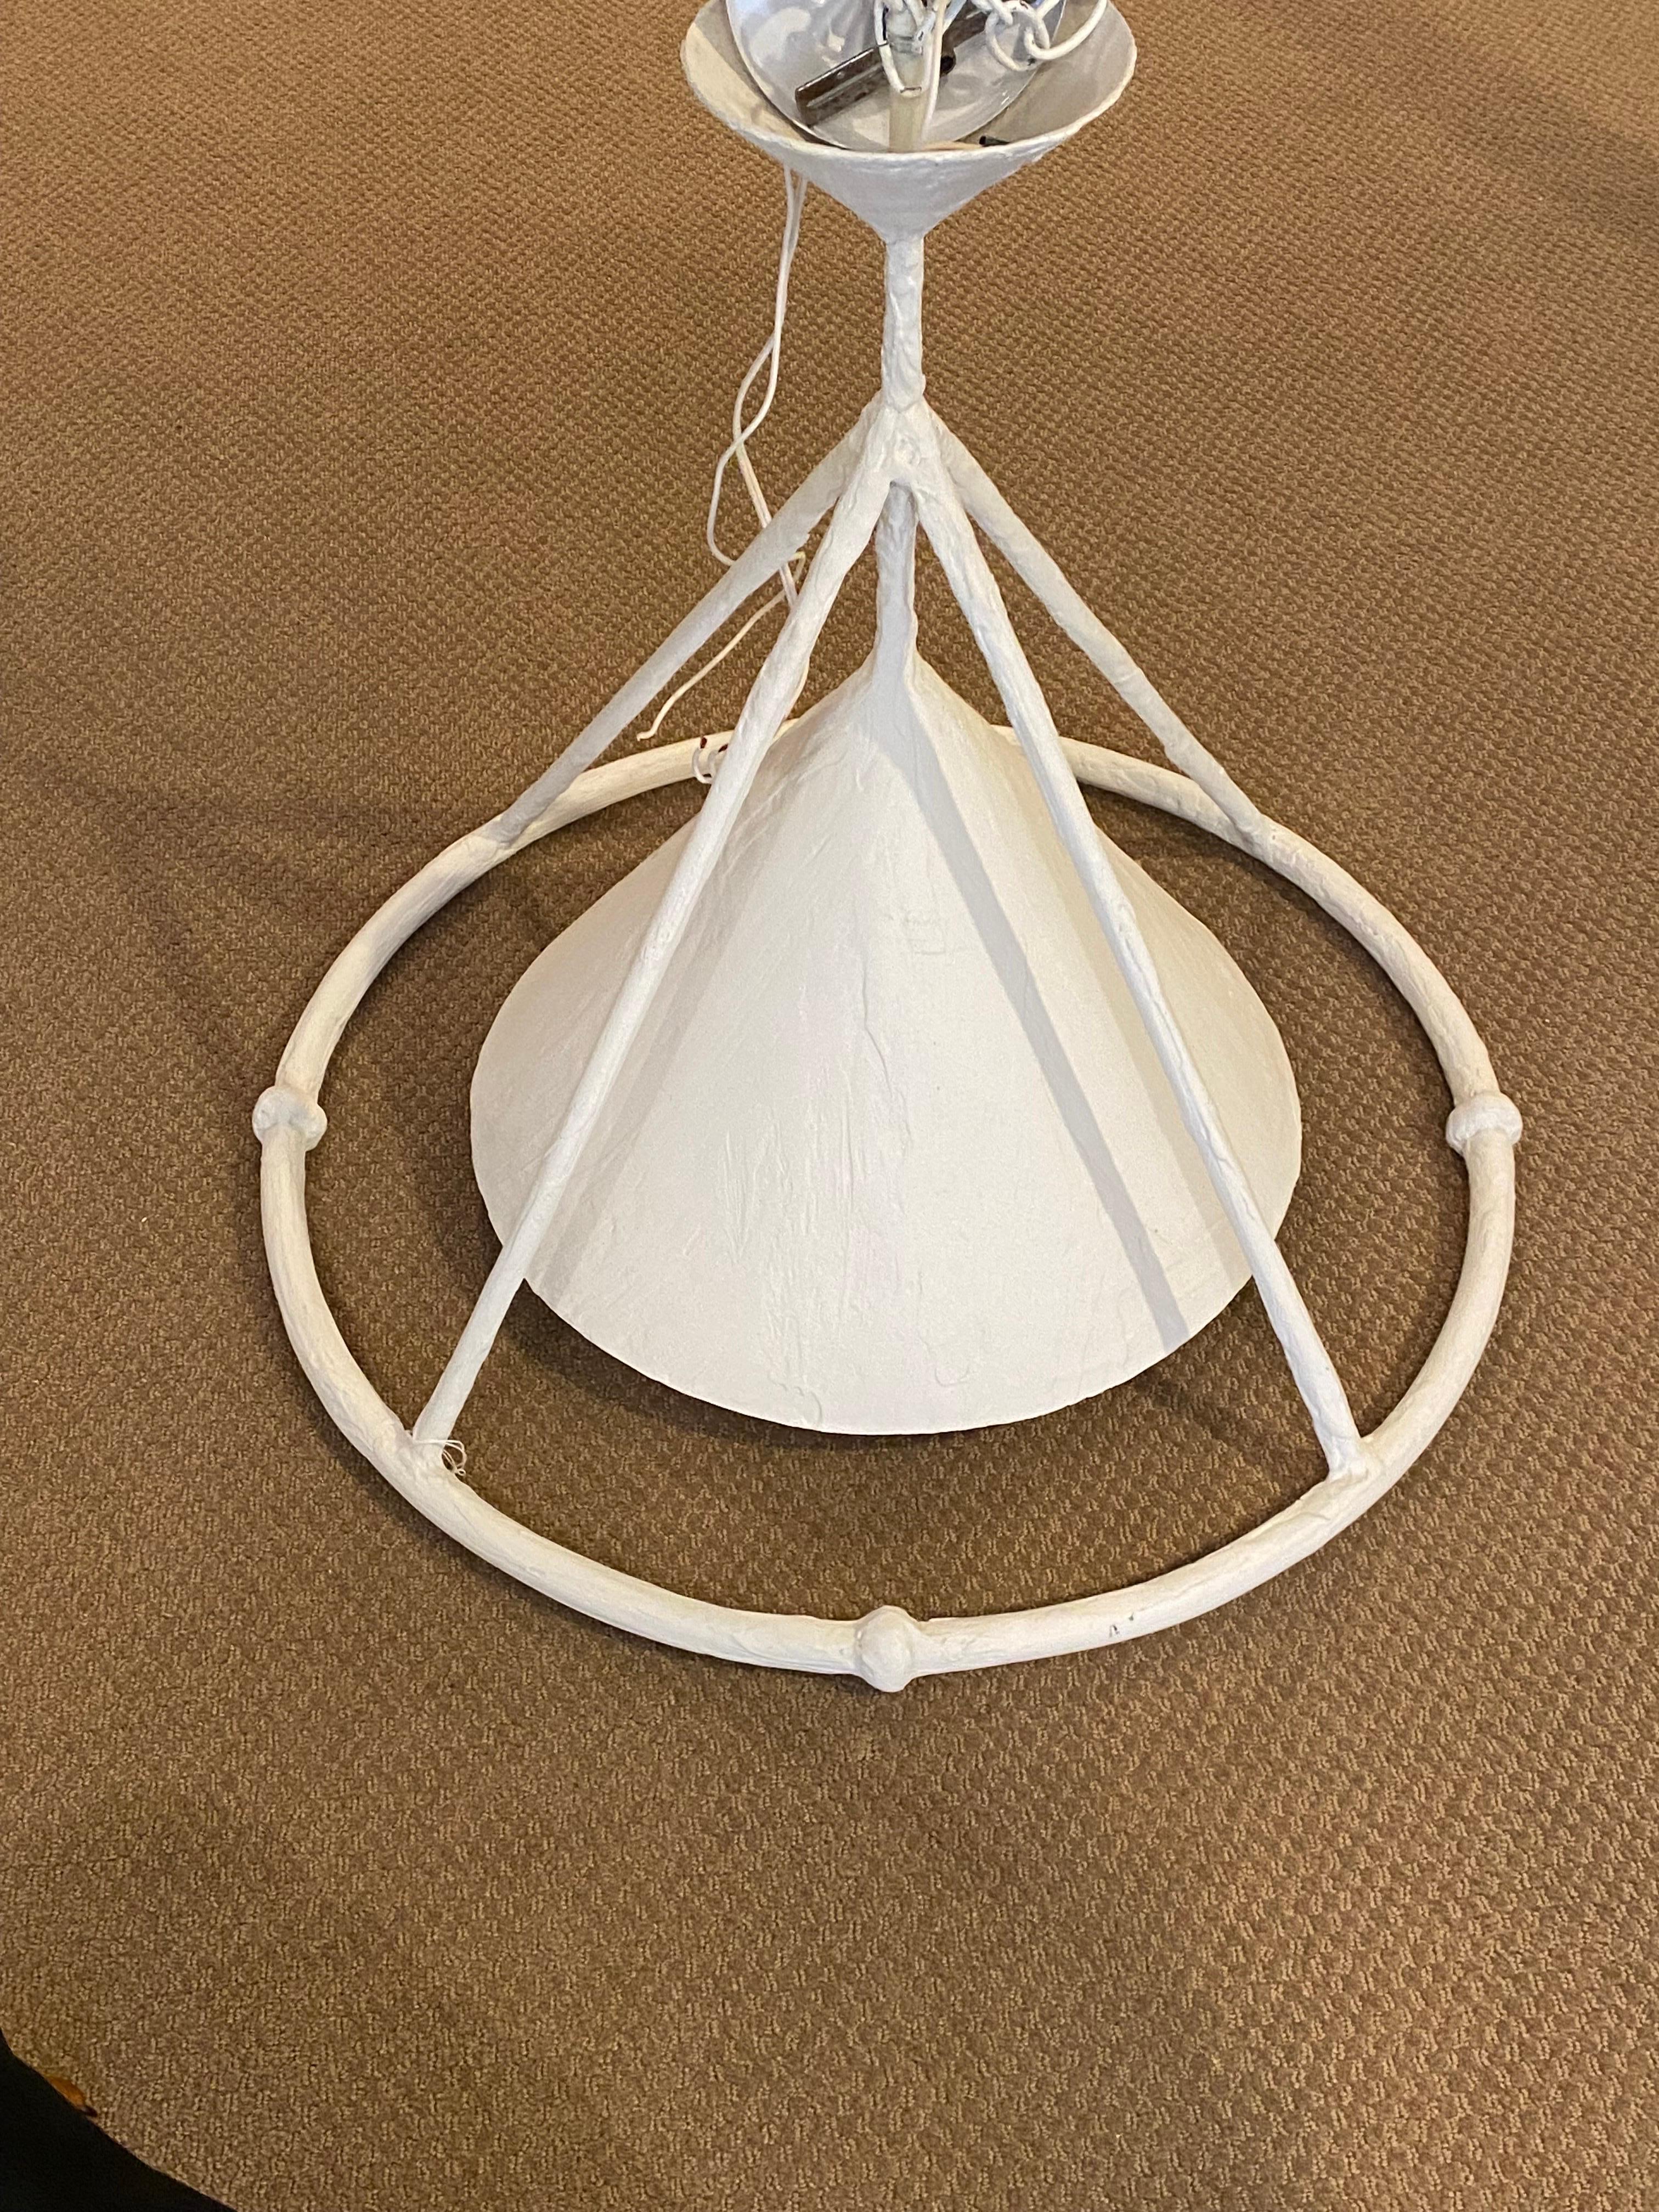 White Plaster Custom Hanging Lighting Fixture by Paul Ferrante  For Sale 4